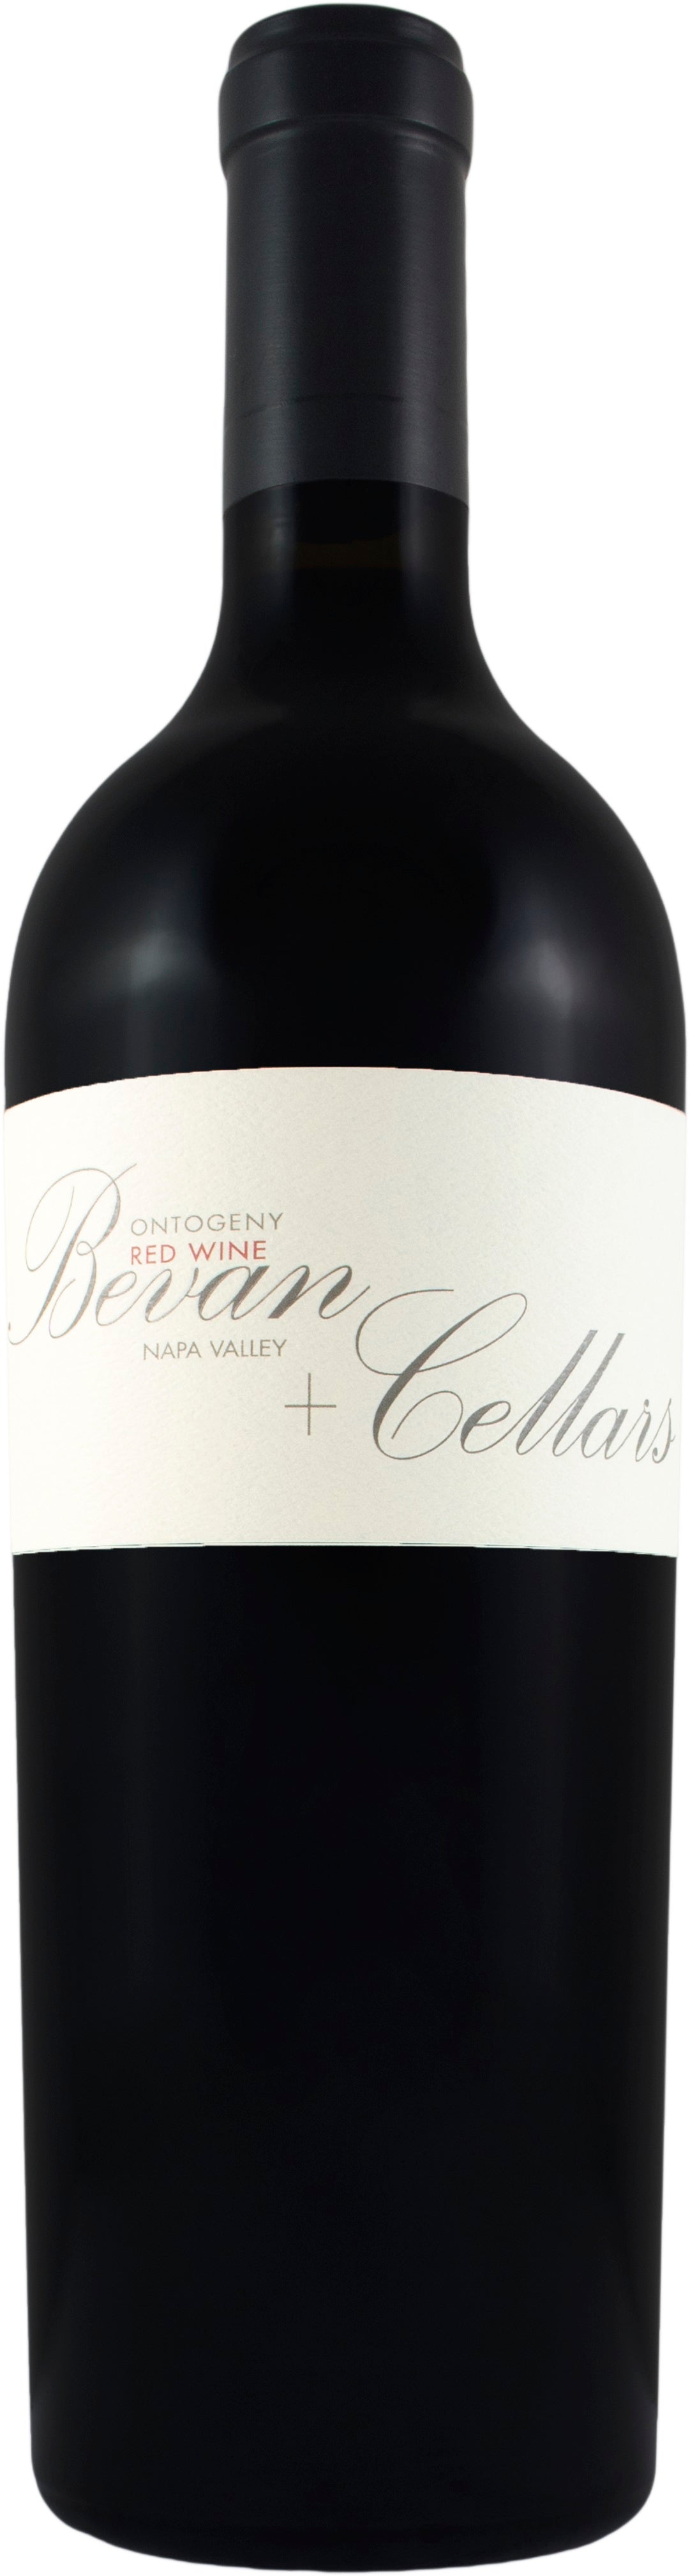 Bevan Cellars Red Tench Vineyard 2018